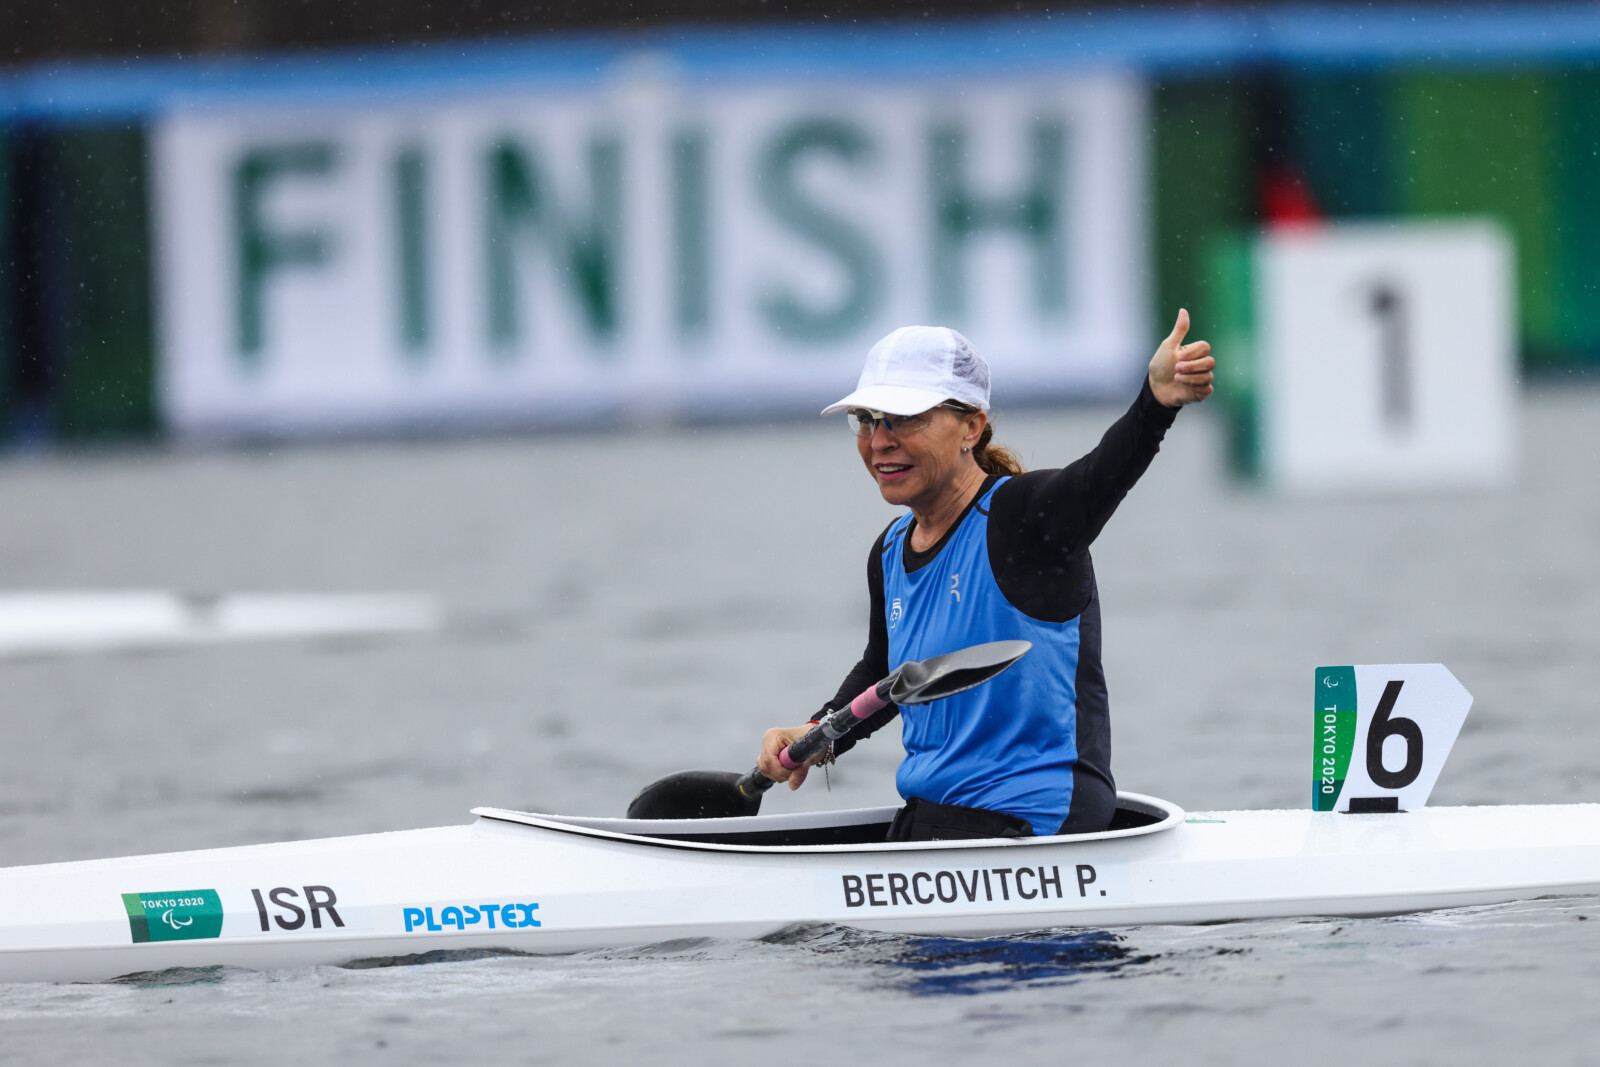 باسكال بيركوڤيتش تتنافس في قارب الكياك في طوكيو، للمرة الرابعة في الألعاب البارالمبية (تصوير: چلعاد كڤالرتشيك)